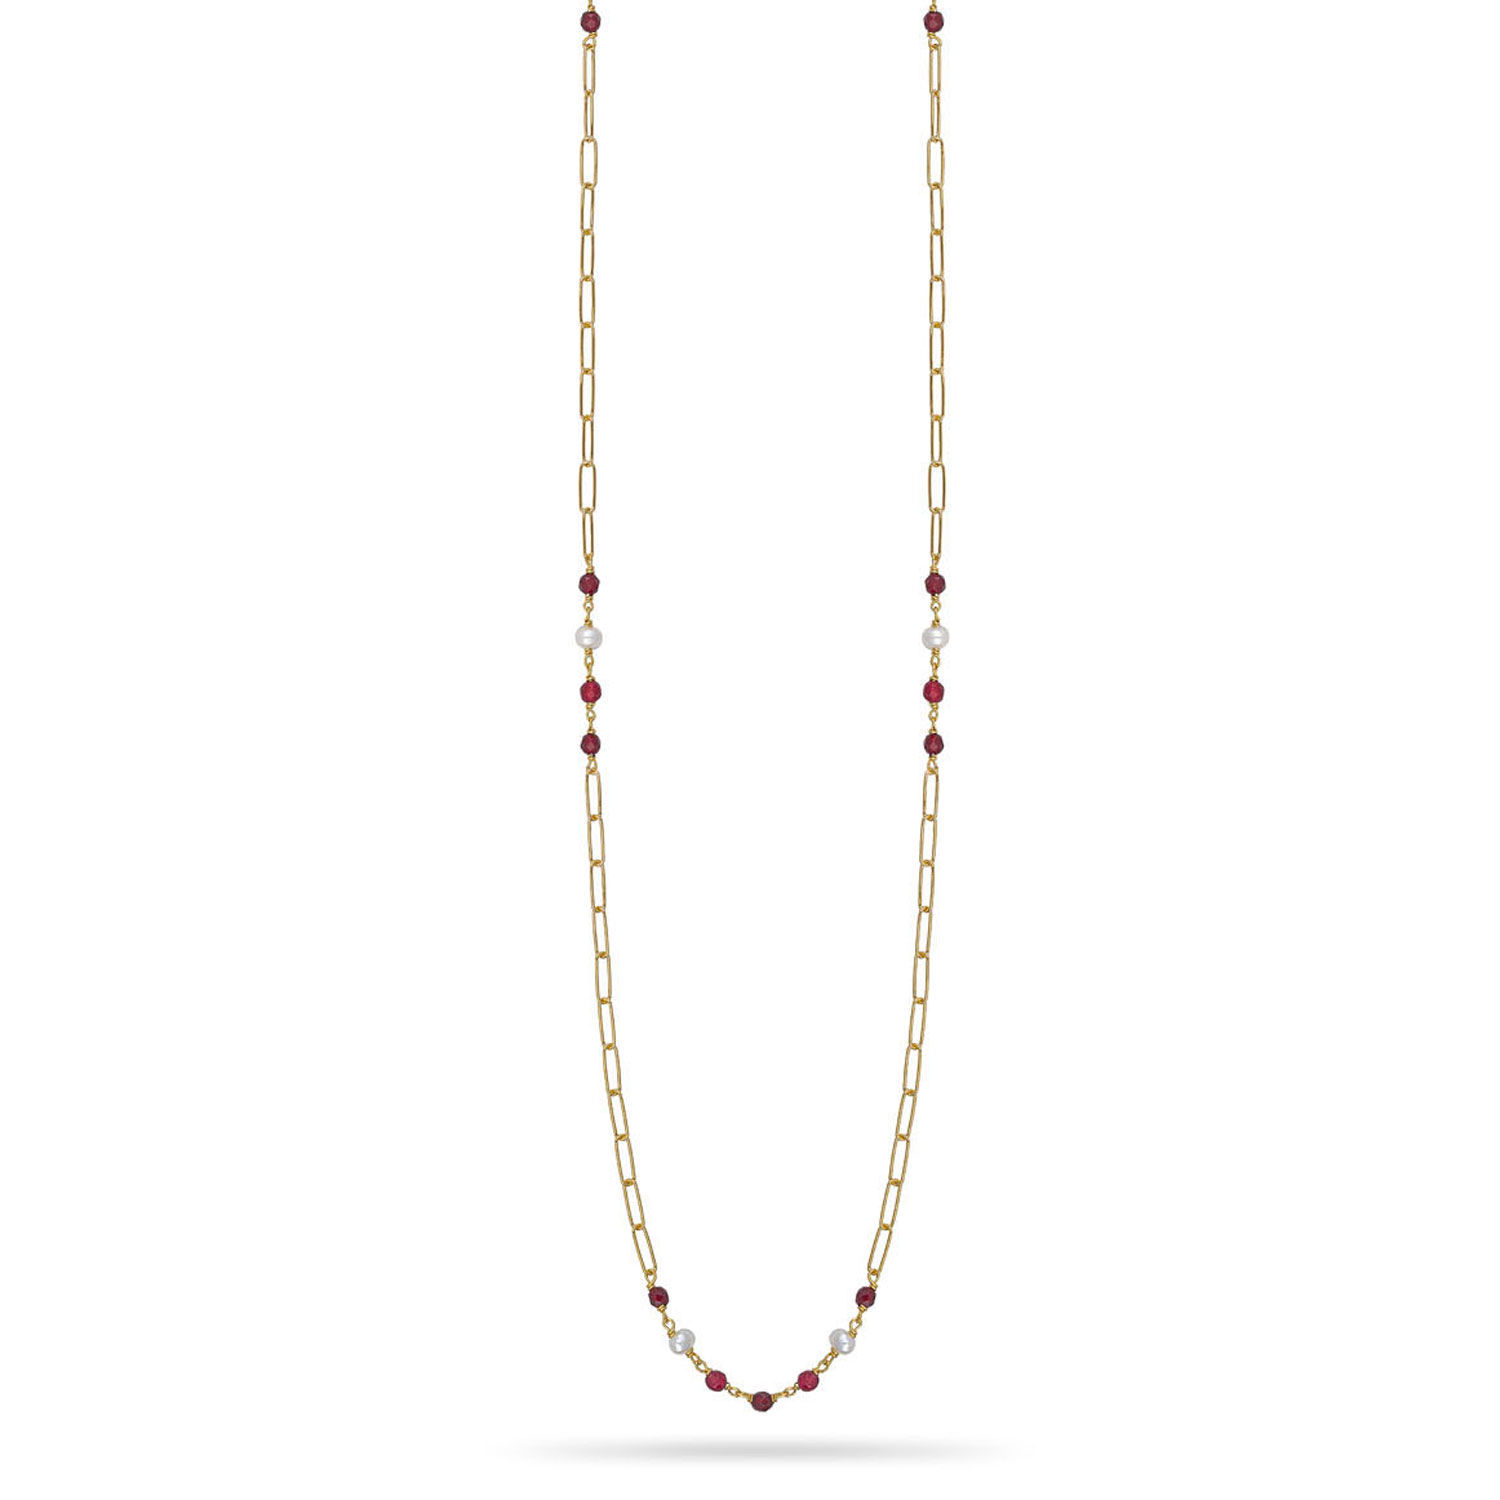 Αλυσίδα γυαλιών Swing από επιχρυσωμένο ασήμι 925° με κόκκινο αχάτη, quartz και freshwater pearls που μετασχηματίζεται σε κολιέ